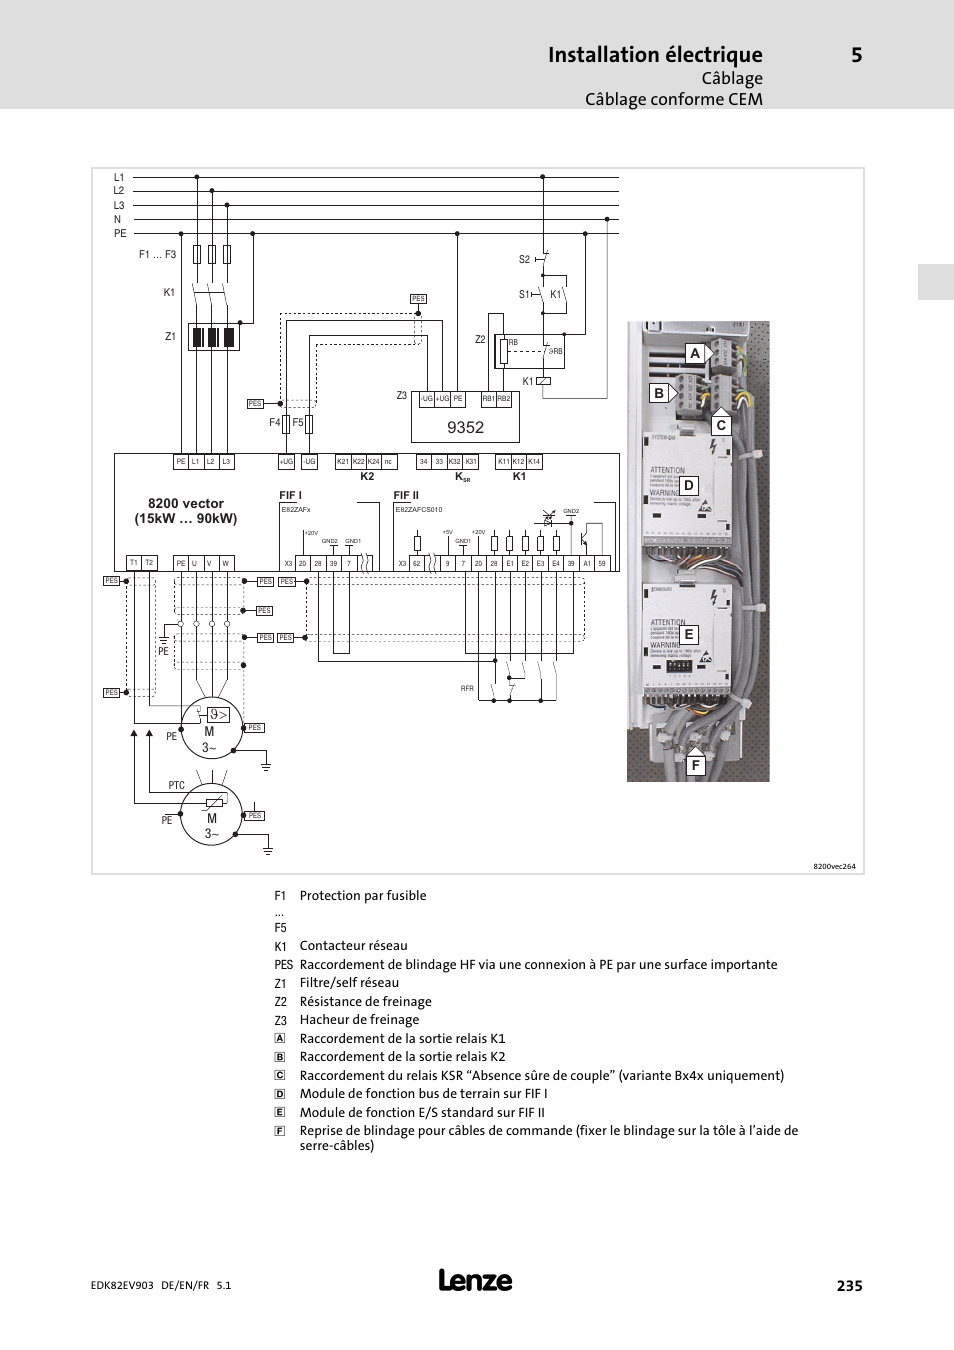 Installation électrique, Câblage câblage conforme cem | Lenze E82EV 8200  vector 15kW-90kW User Manual | Page 235 / 288 | Original mode